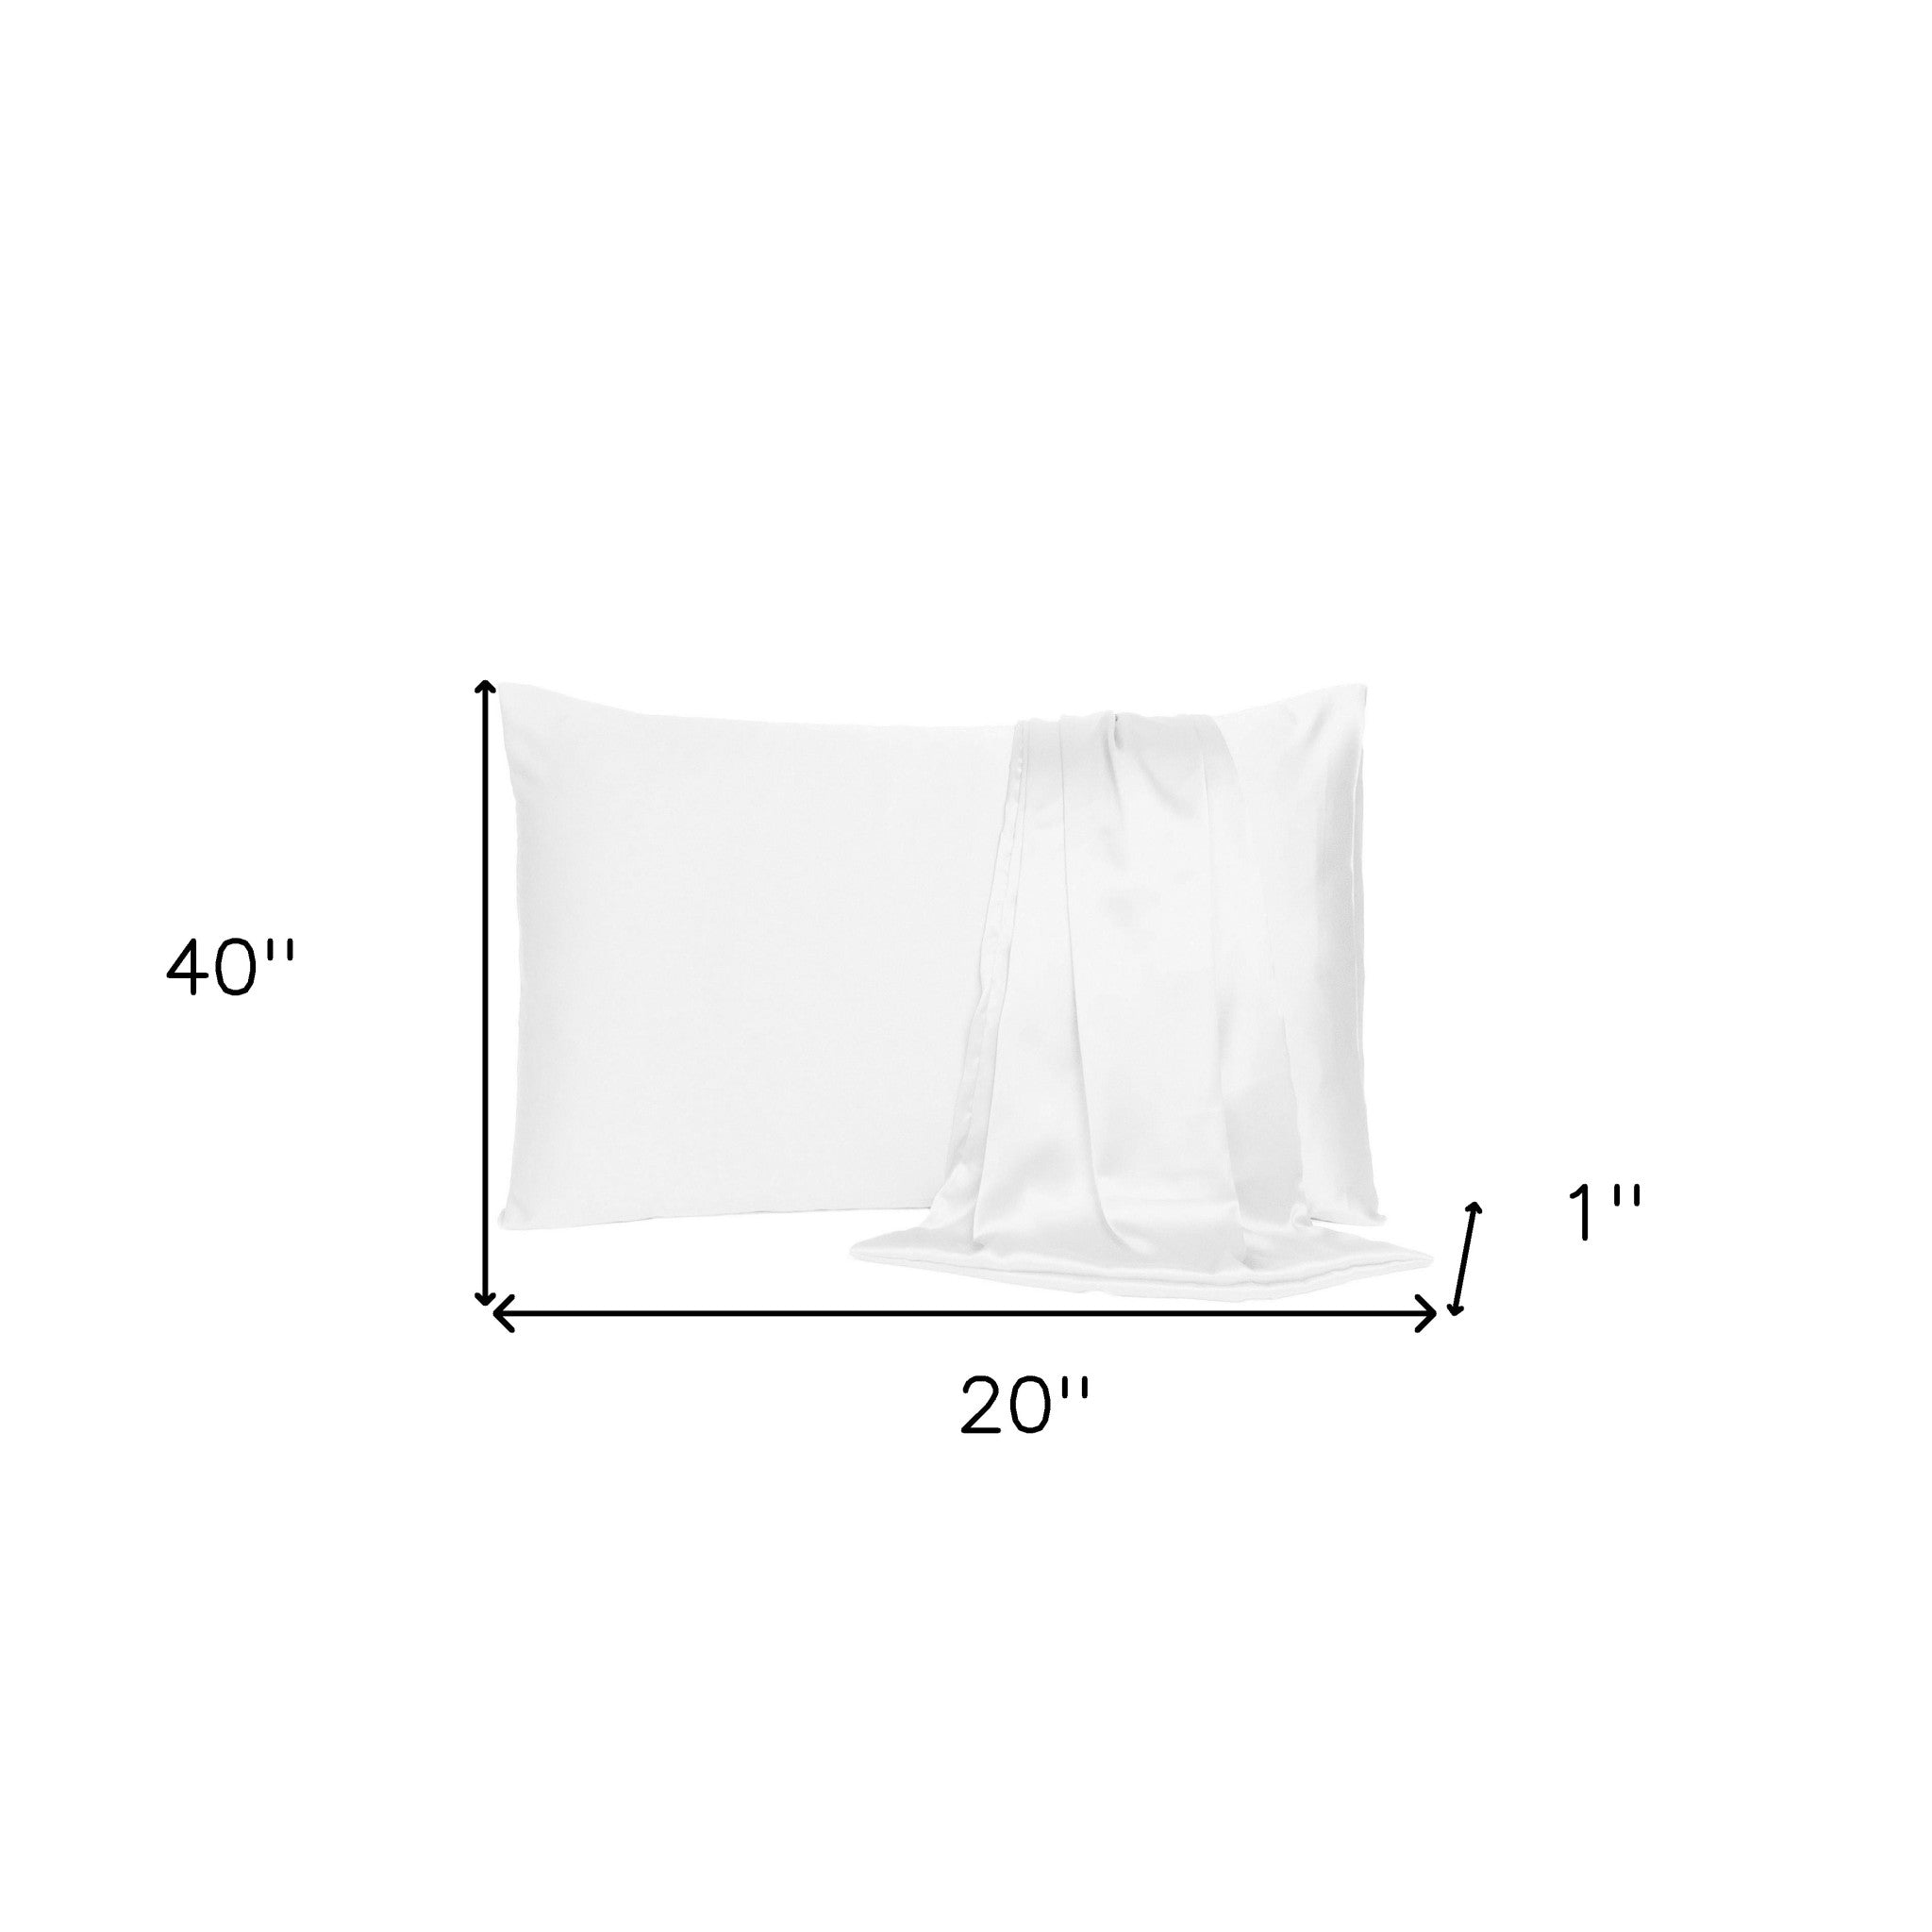 White Dreamy Set Of 2 Silky Satin King Pillowcases